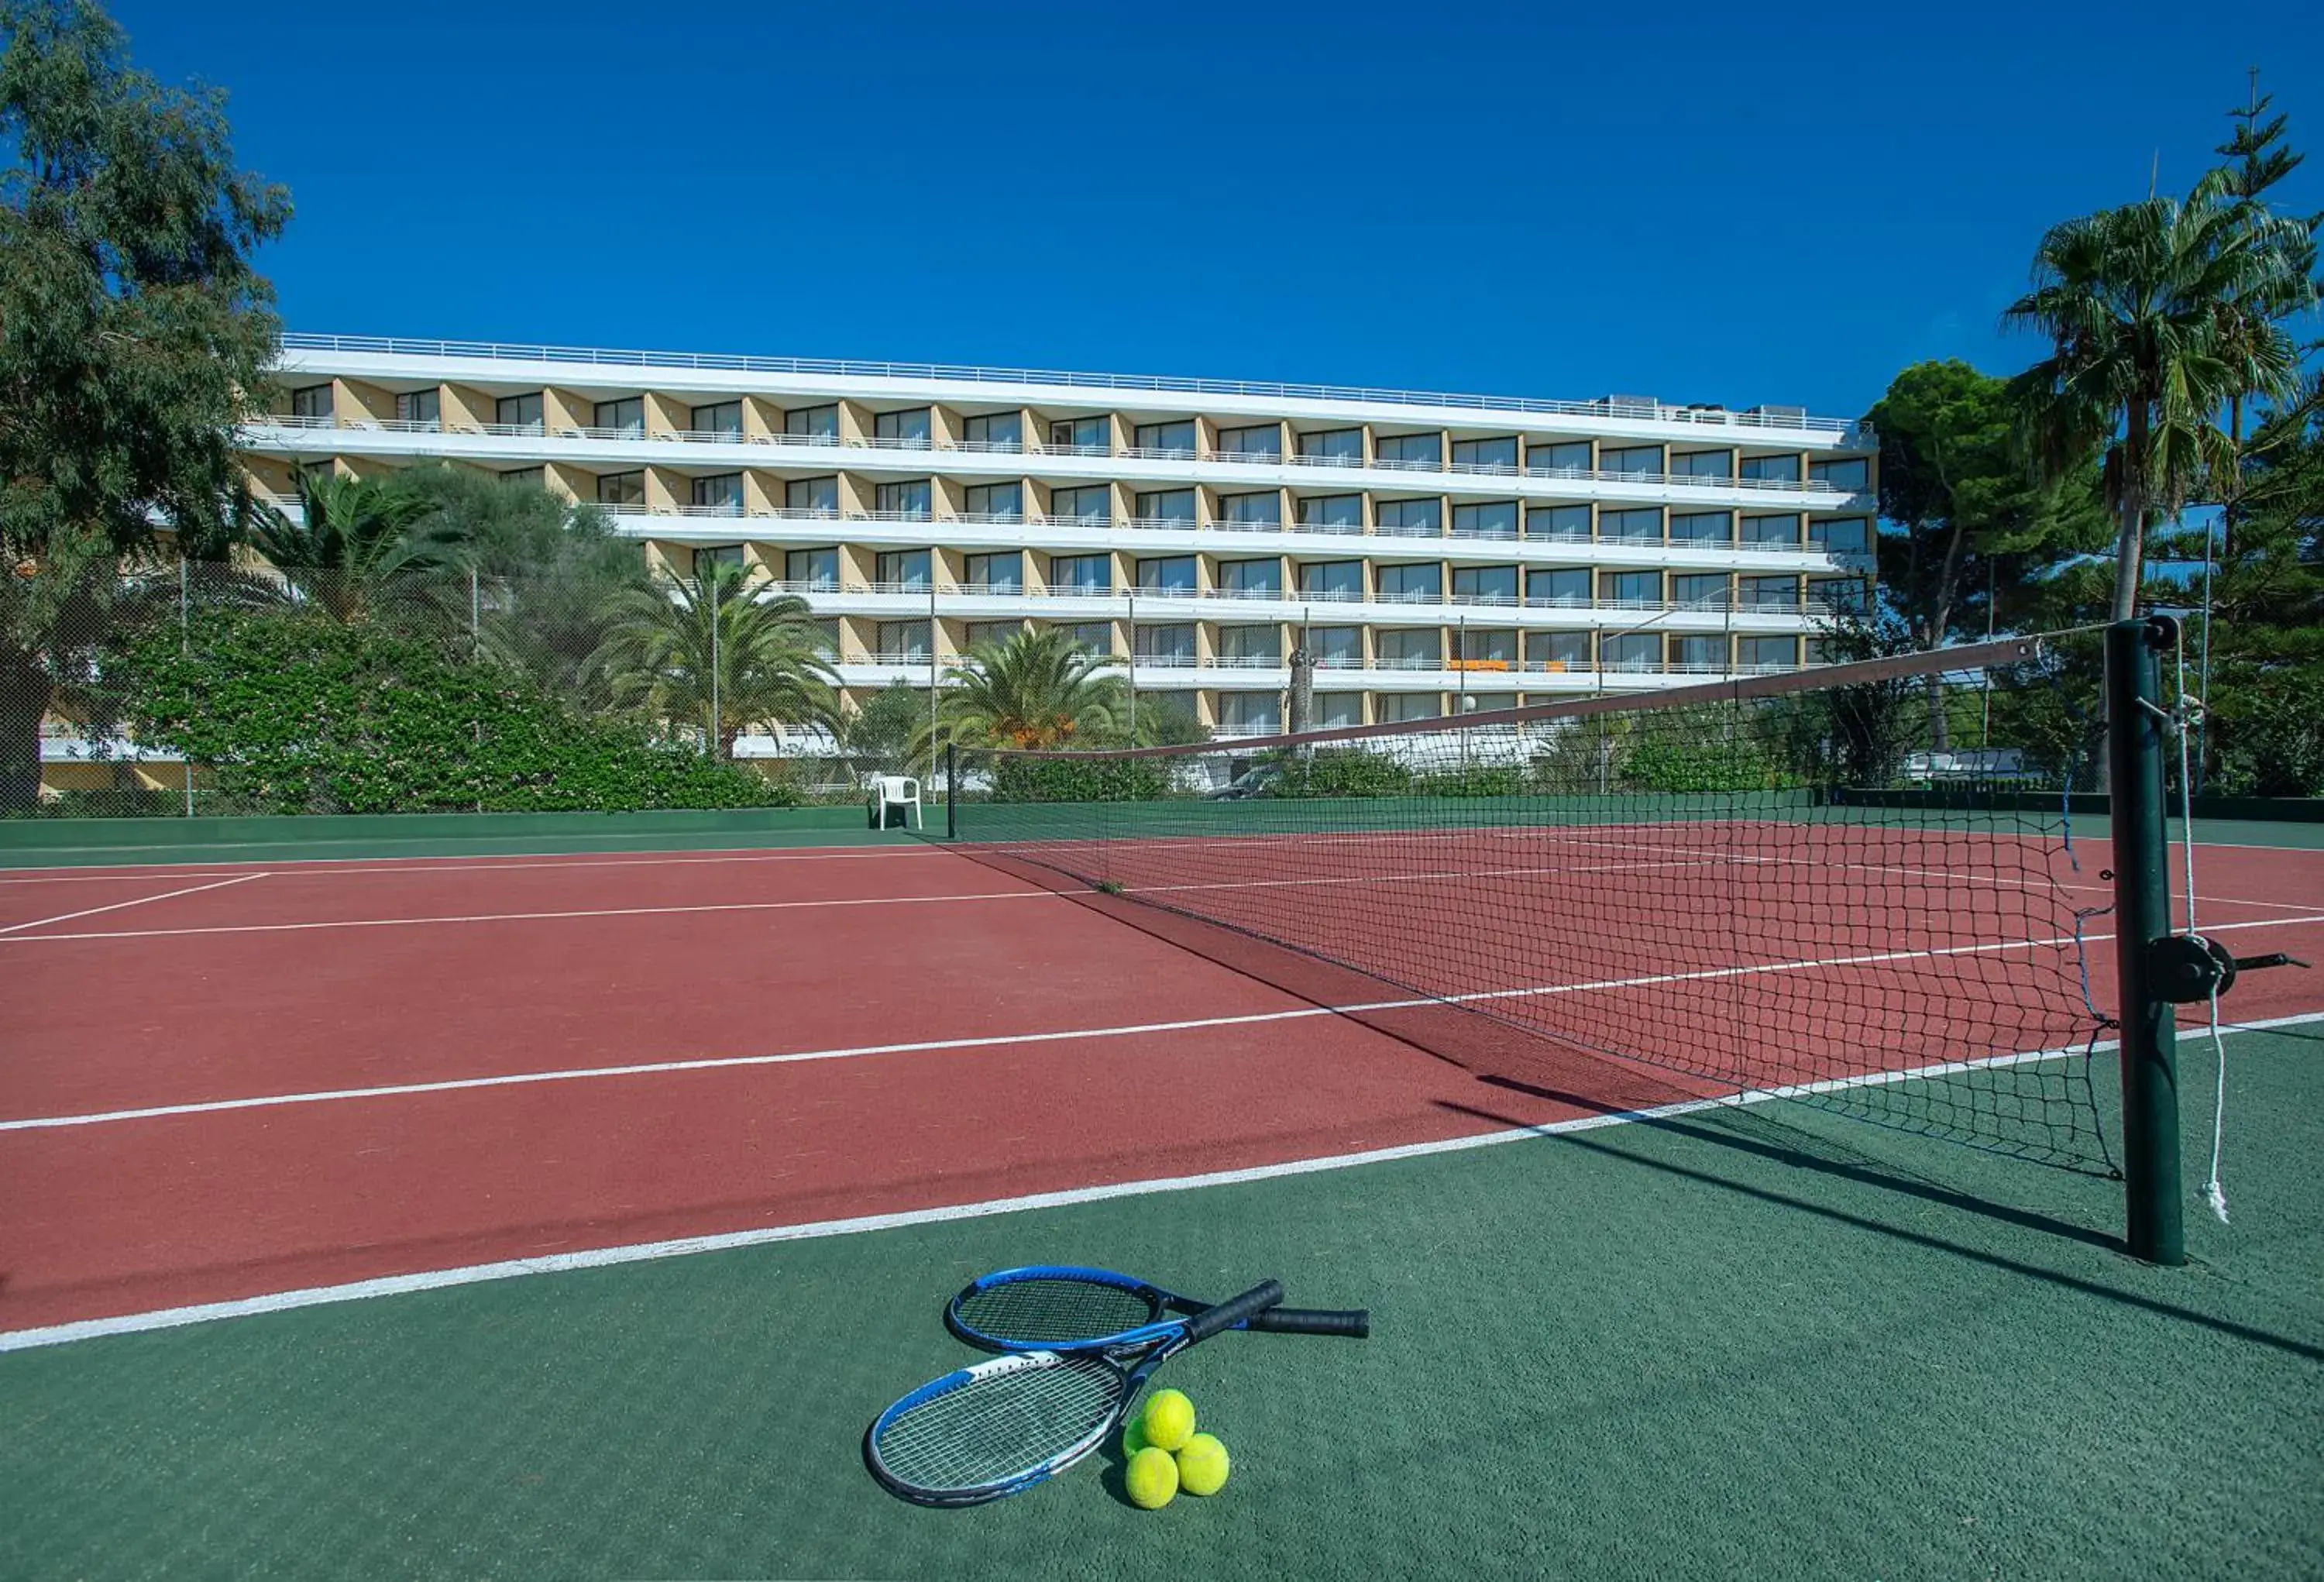 Tennis court, Tennis/Squash in Exagon Park